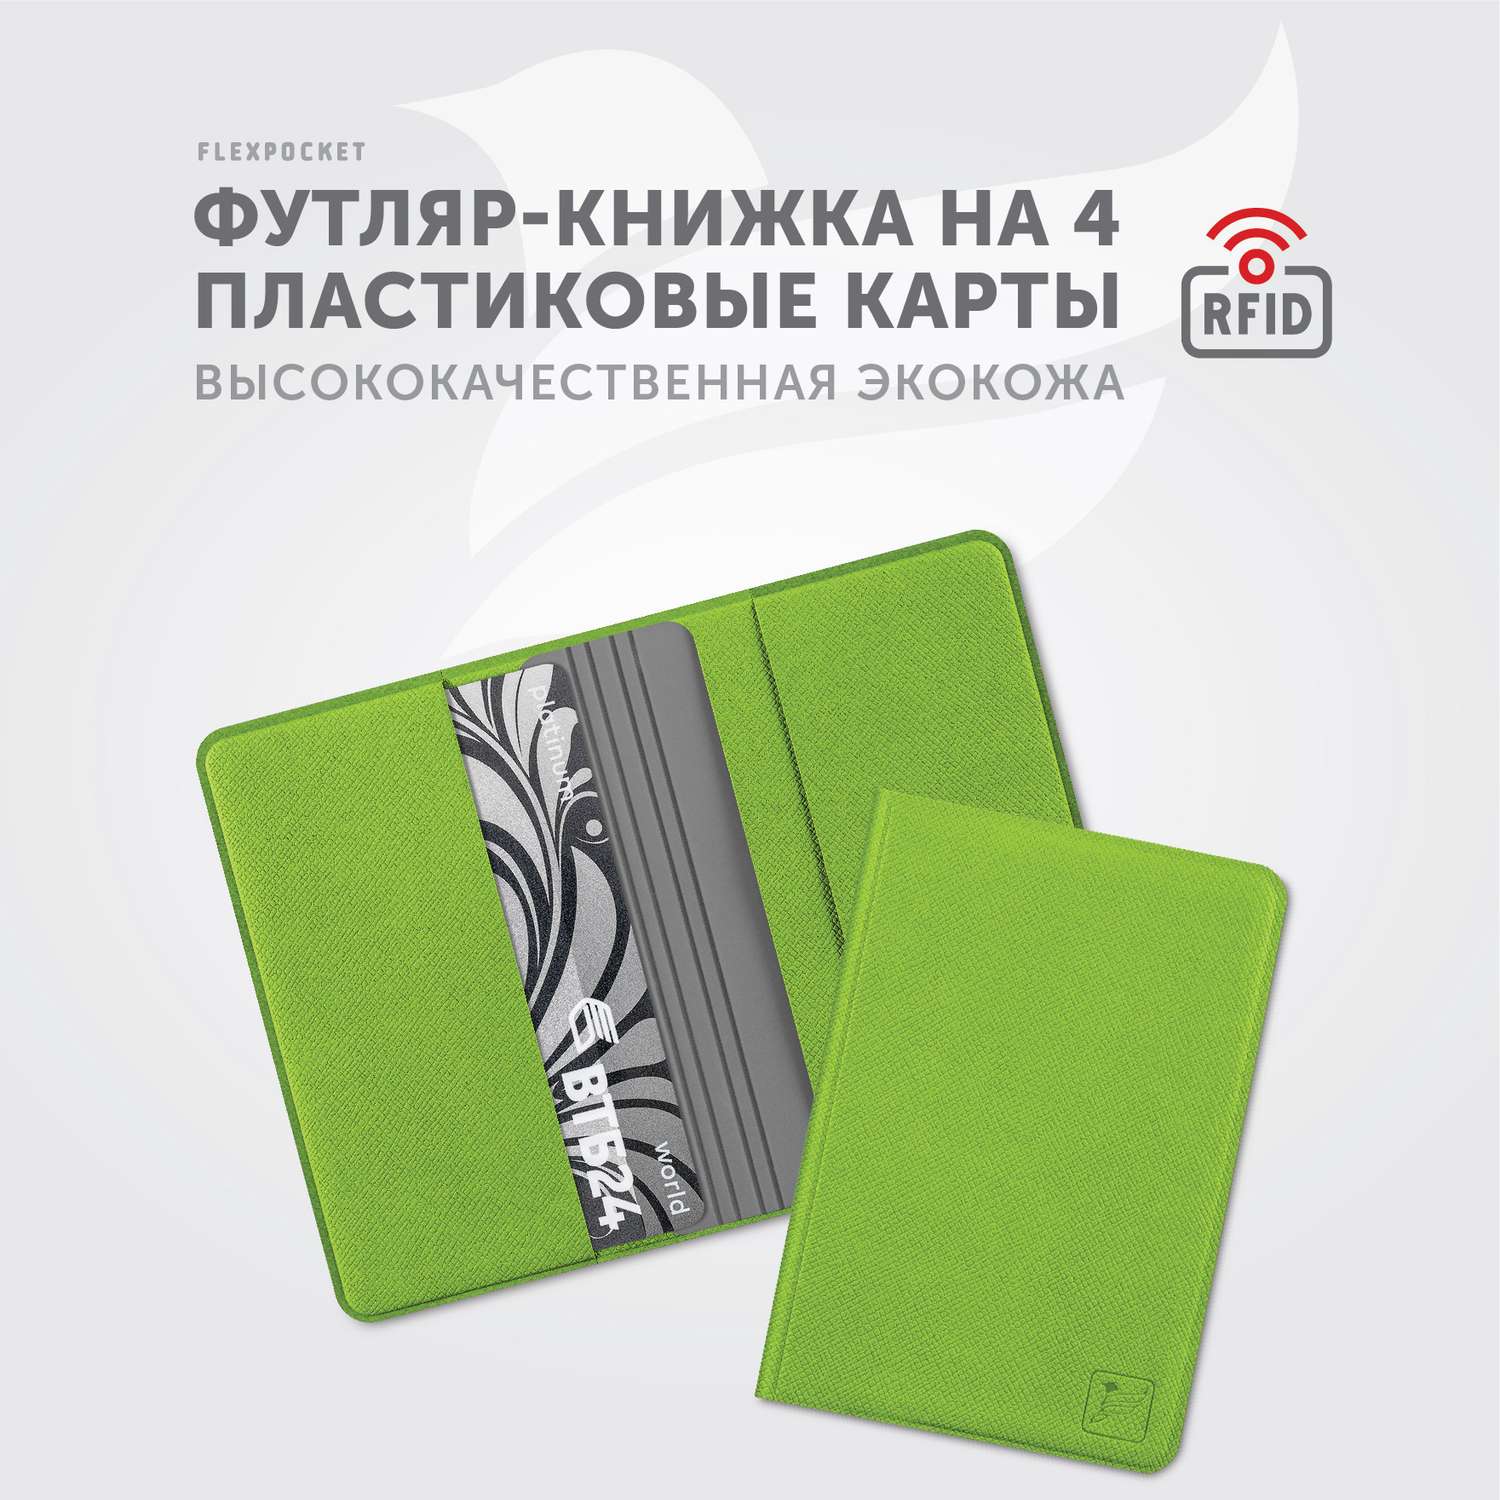 Картхолдер с RFID-защитой Flexpocket FKKR-4E/Зеленый - фото 2